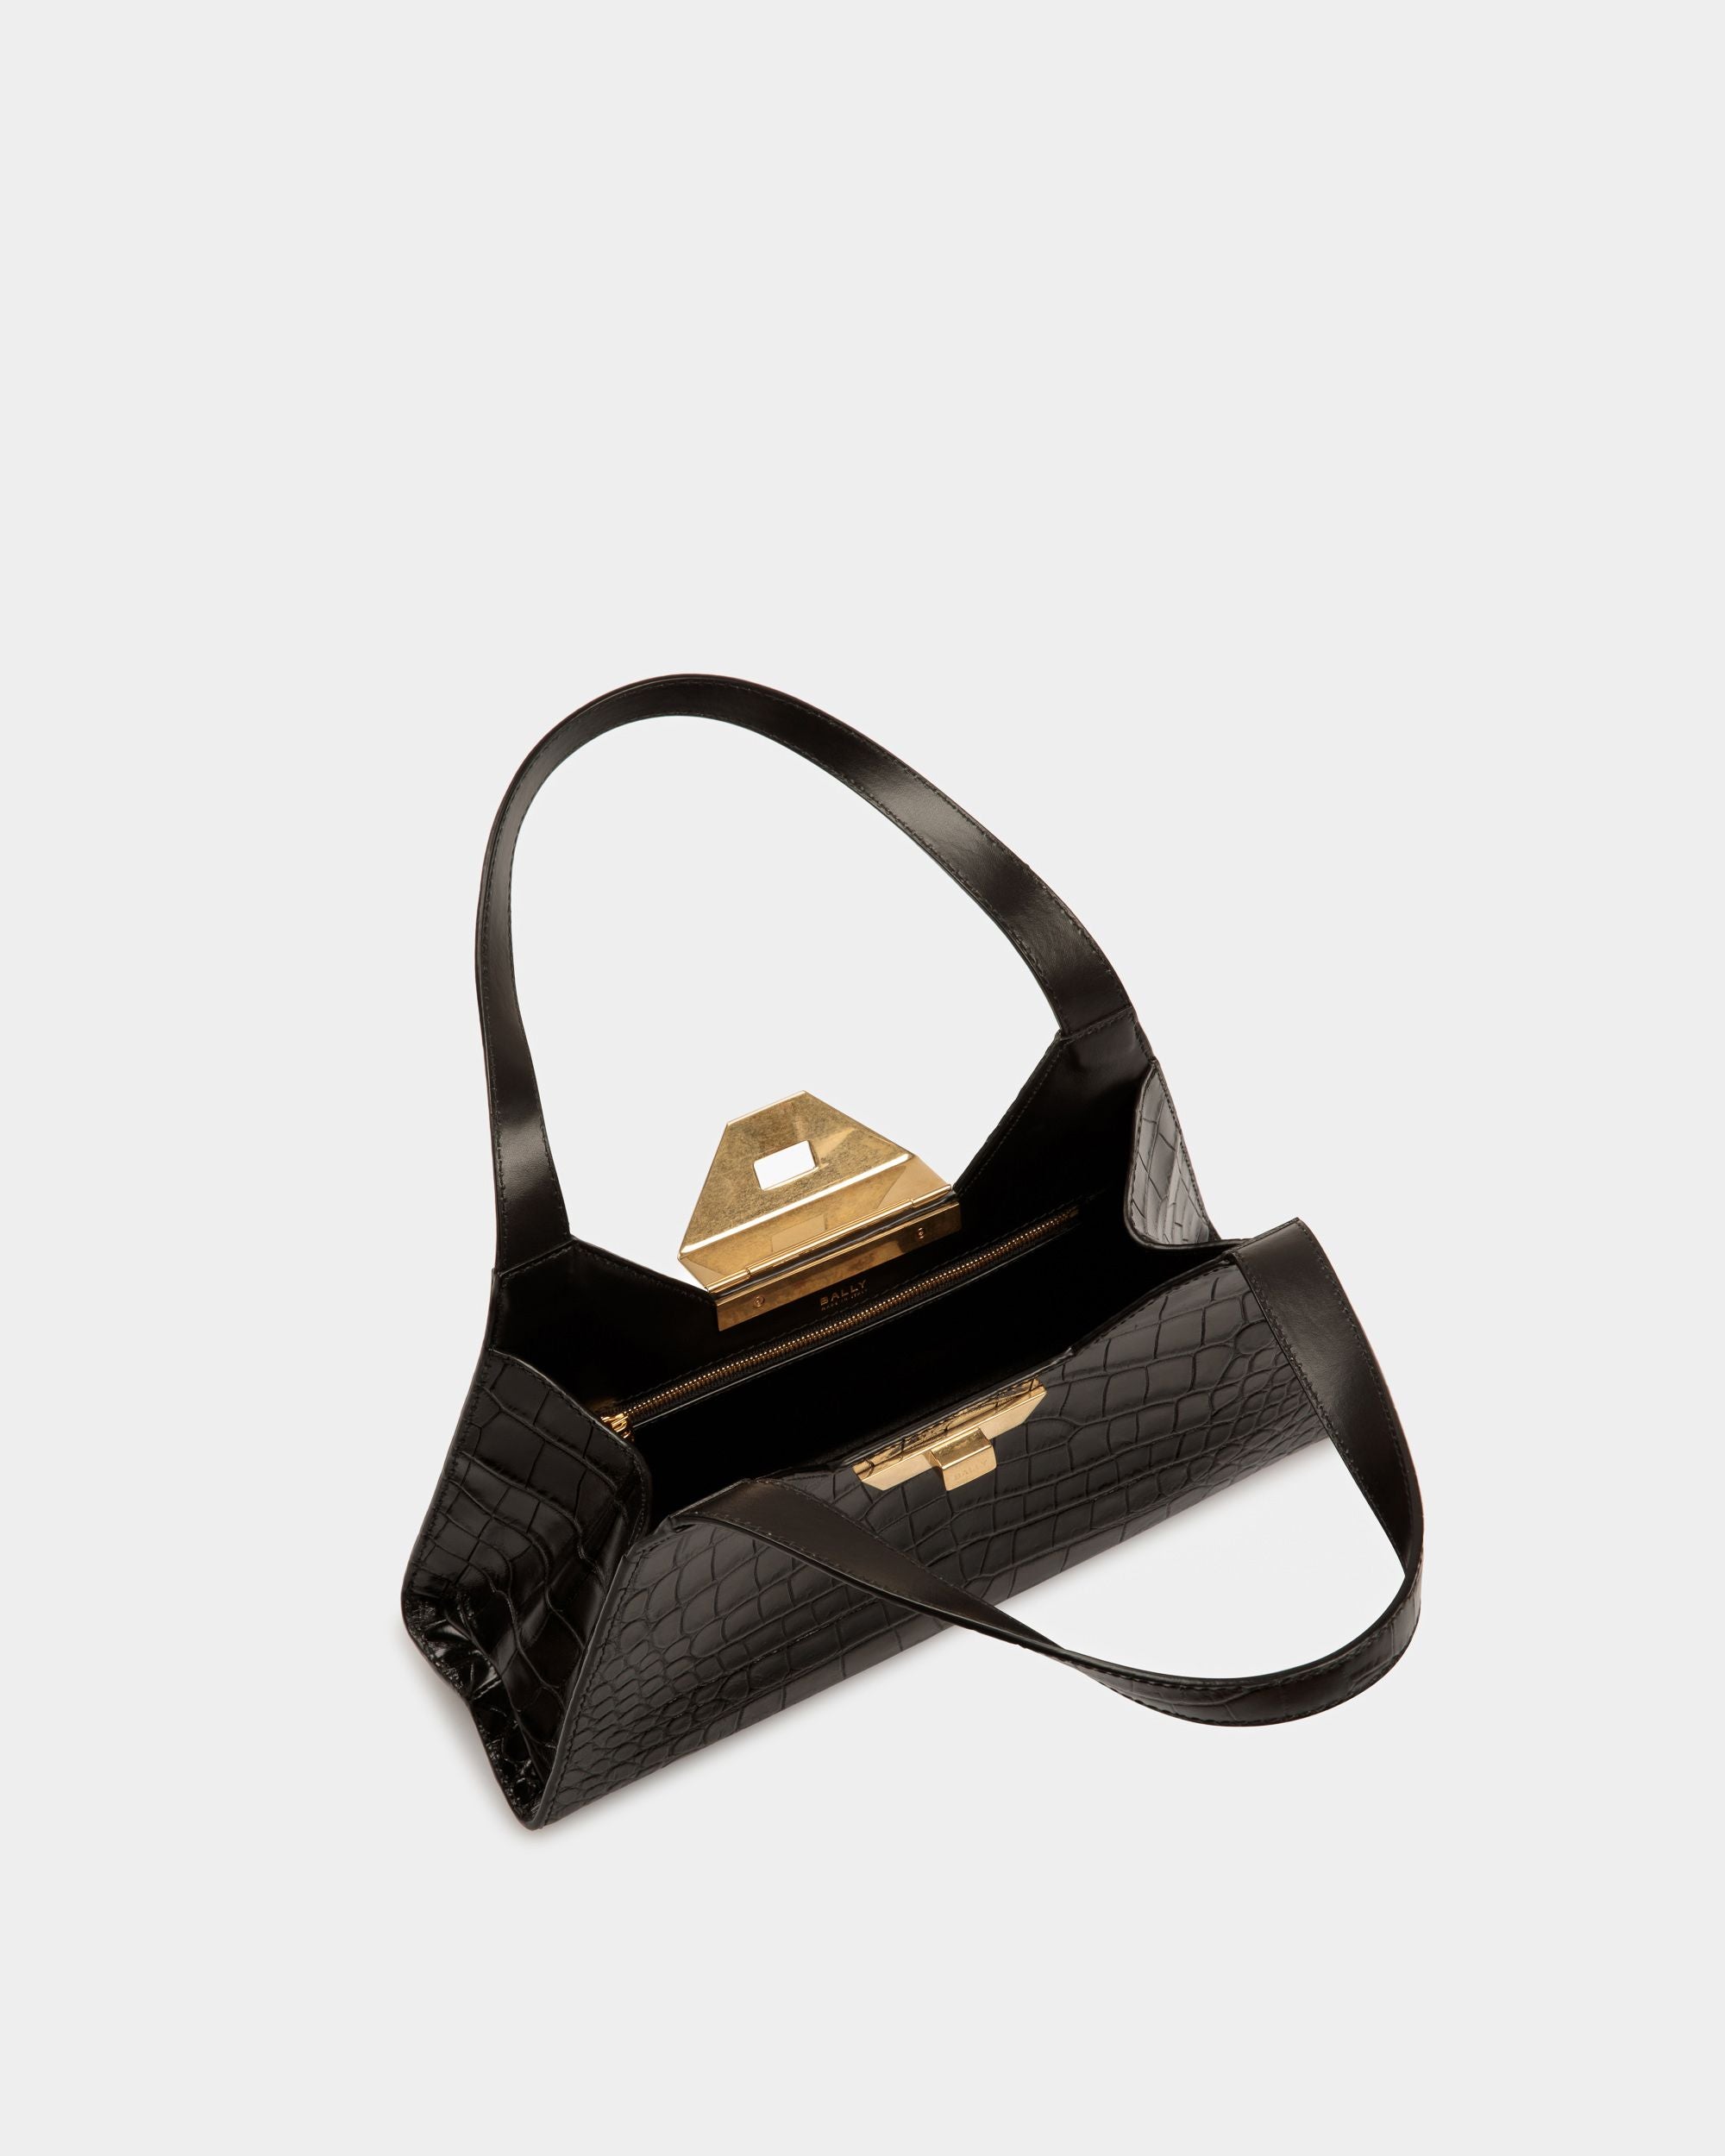 Trilliant Small Shoulder Bag | Women's Shoulder Bag | Black Leather | Bally | Still Life Open / Inside